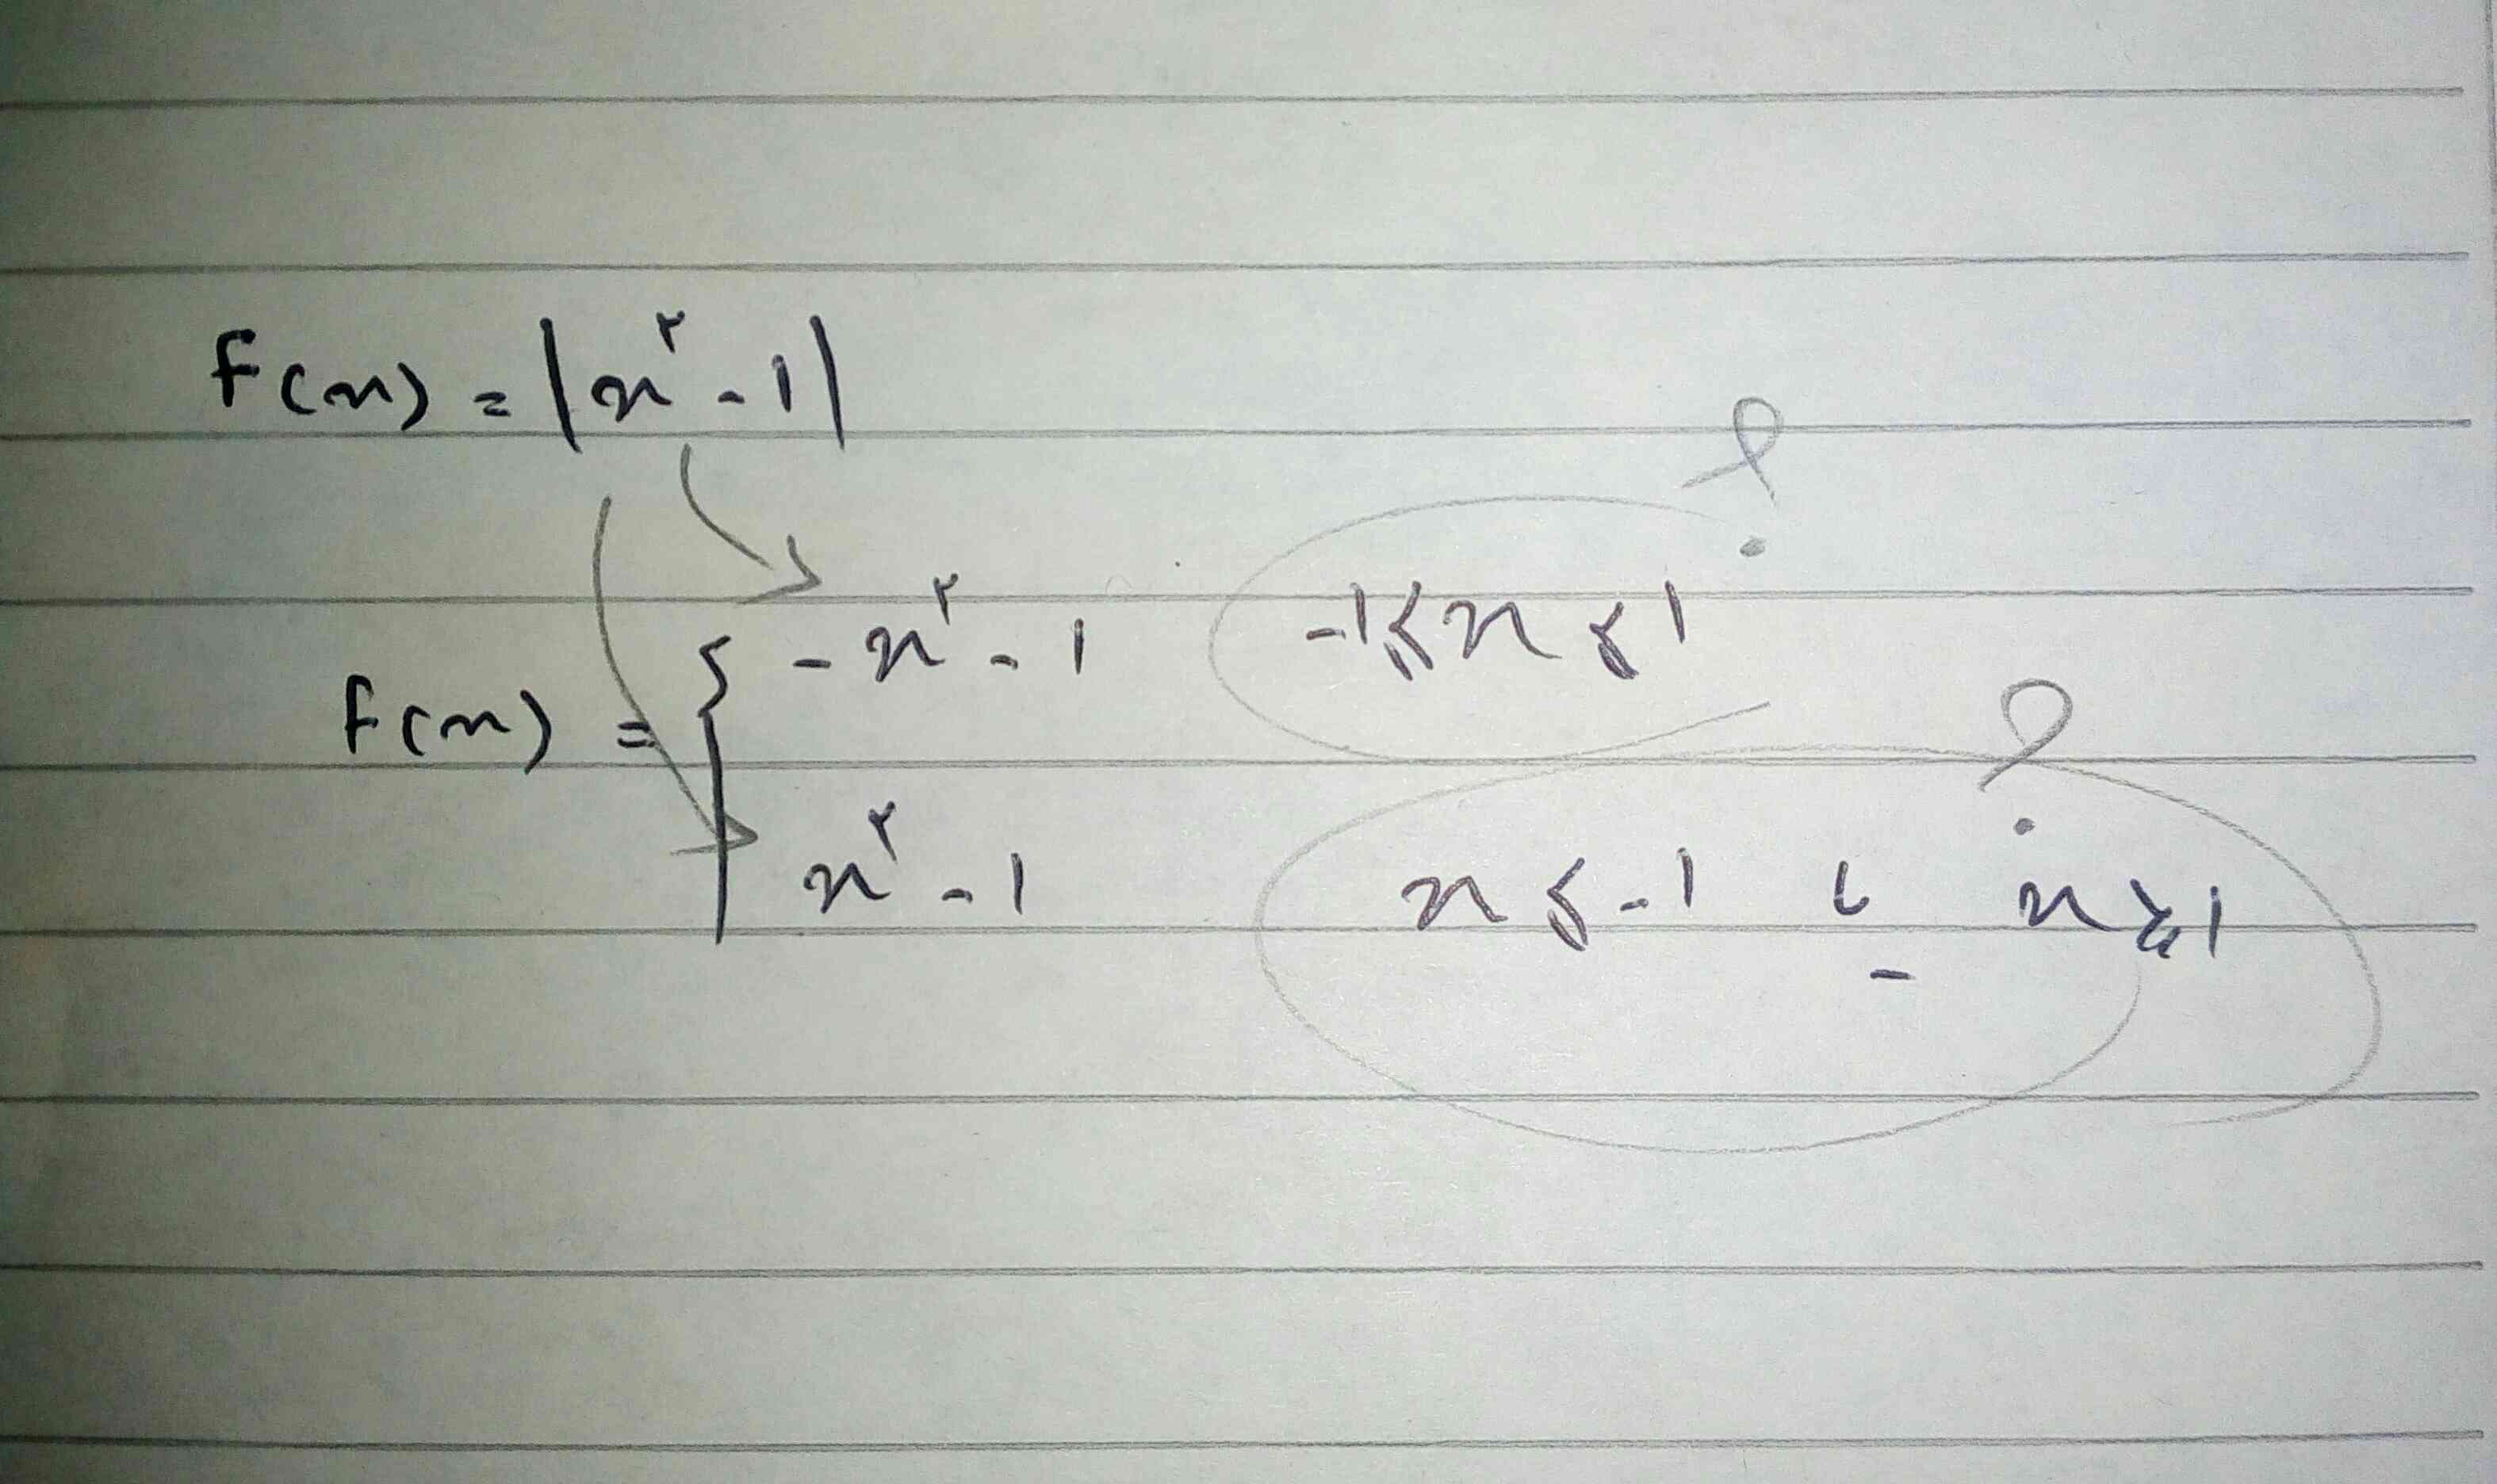 تابعfرو..بصورت یک تابع دو ضابطه ای نوشته...اون قسمتی ک علامت سوال گذاشتم..اونارو چطوری باید پیدا کنیم؟؟لطفا مراحلشو توضیح بدید دوستان..خیلی واجبه😢